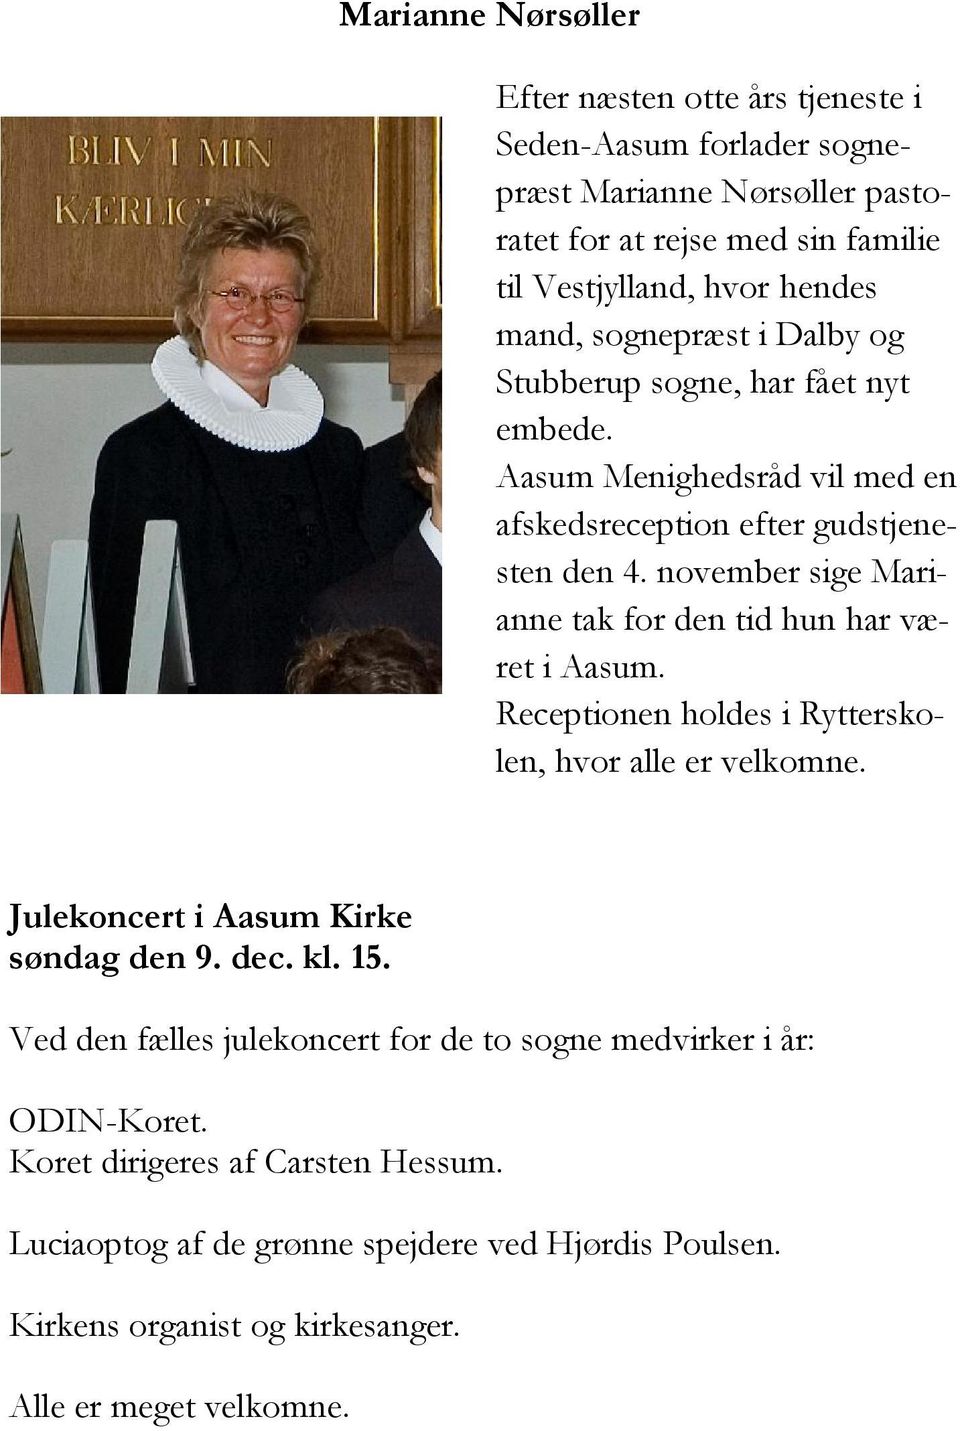 november sige Marianne tak for den tid hun har været i Aasum. Receptionen holdes i Rytterskolen, hvor alle er velkomne. Julekoncert i Aasum Kirke søndag den 9. dec. kl. 15.